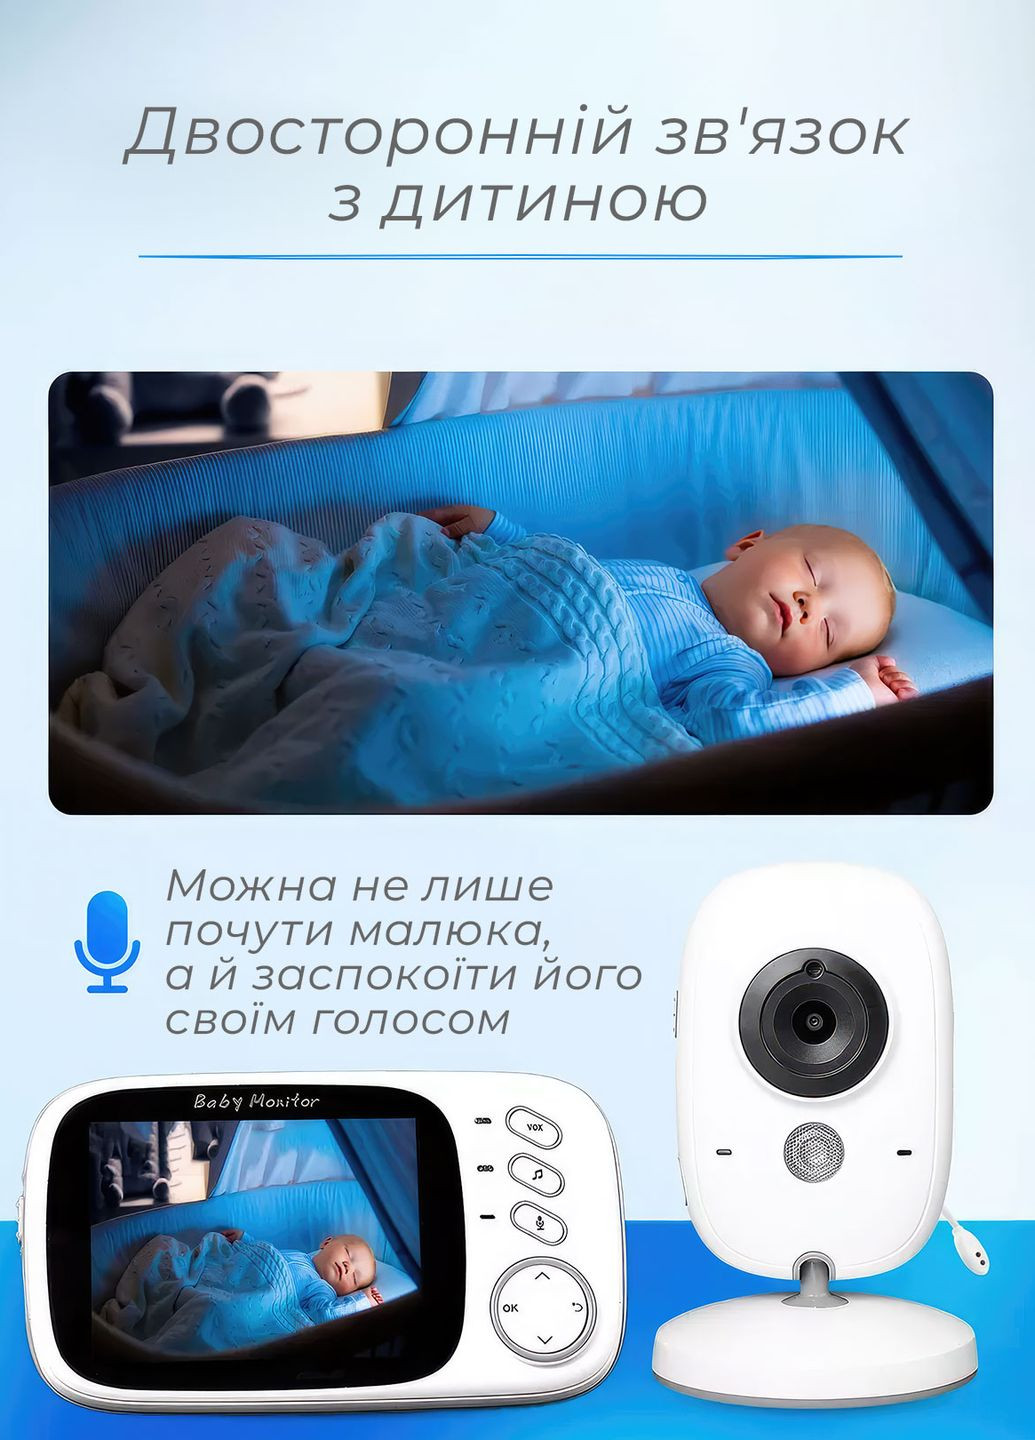 Электронная видеоняня с датчиком звука Baby Monitor VB603 и измерением температуры Белый 68362 OnePro (264921221)